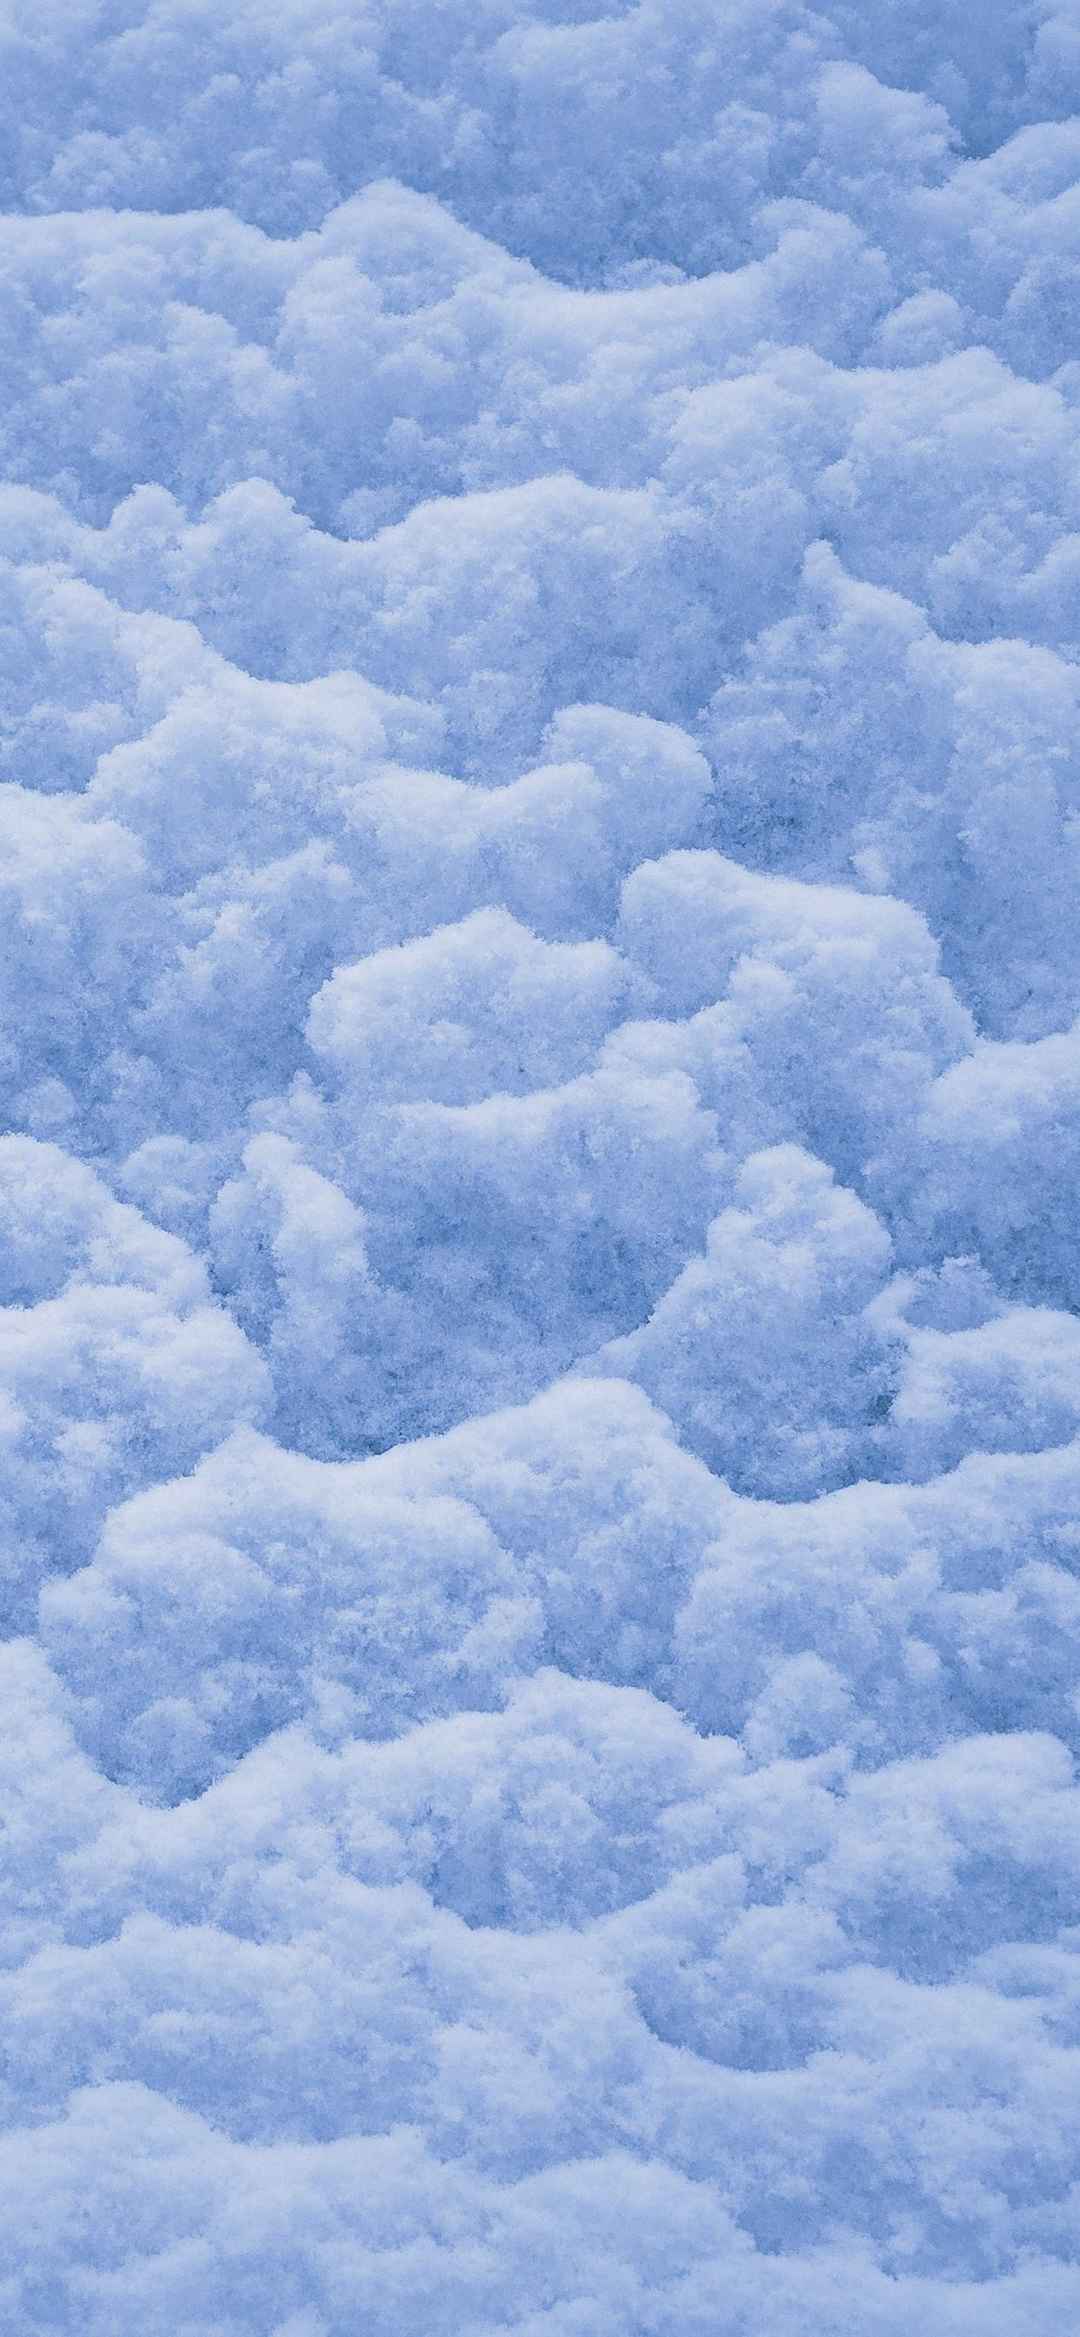 冰雪世界风景手机壁纸